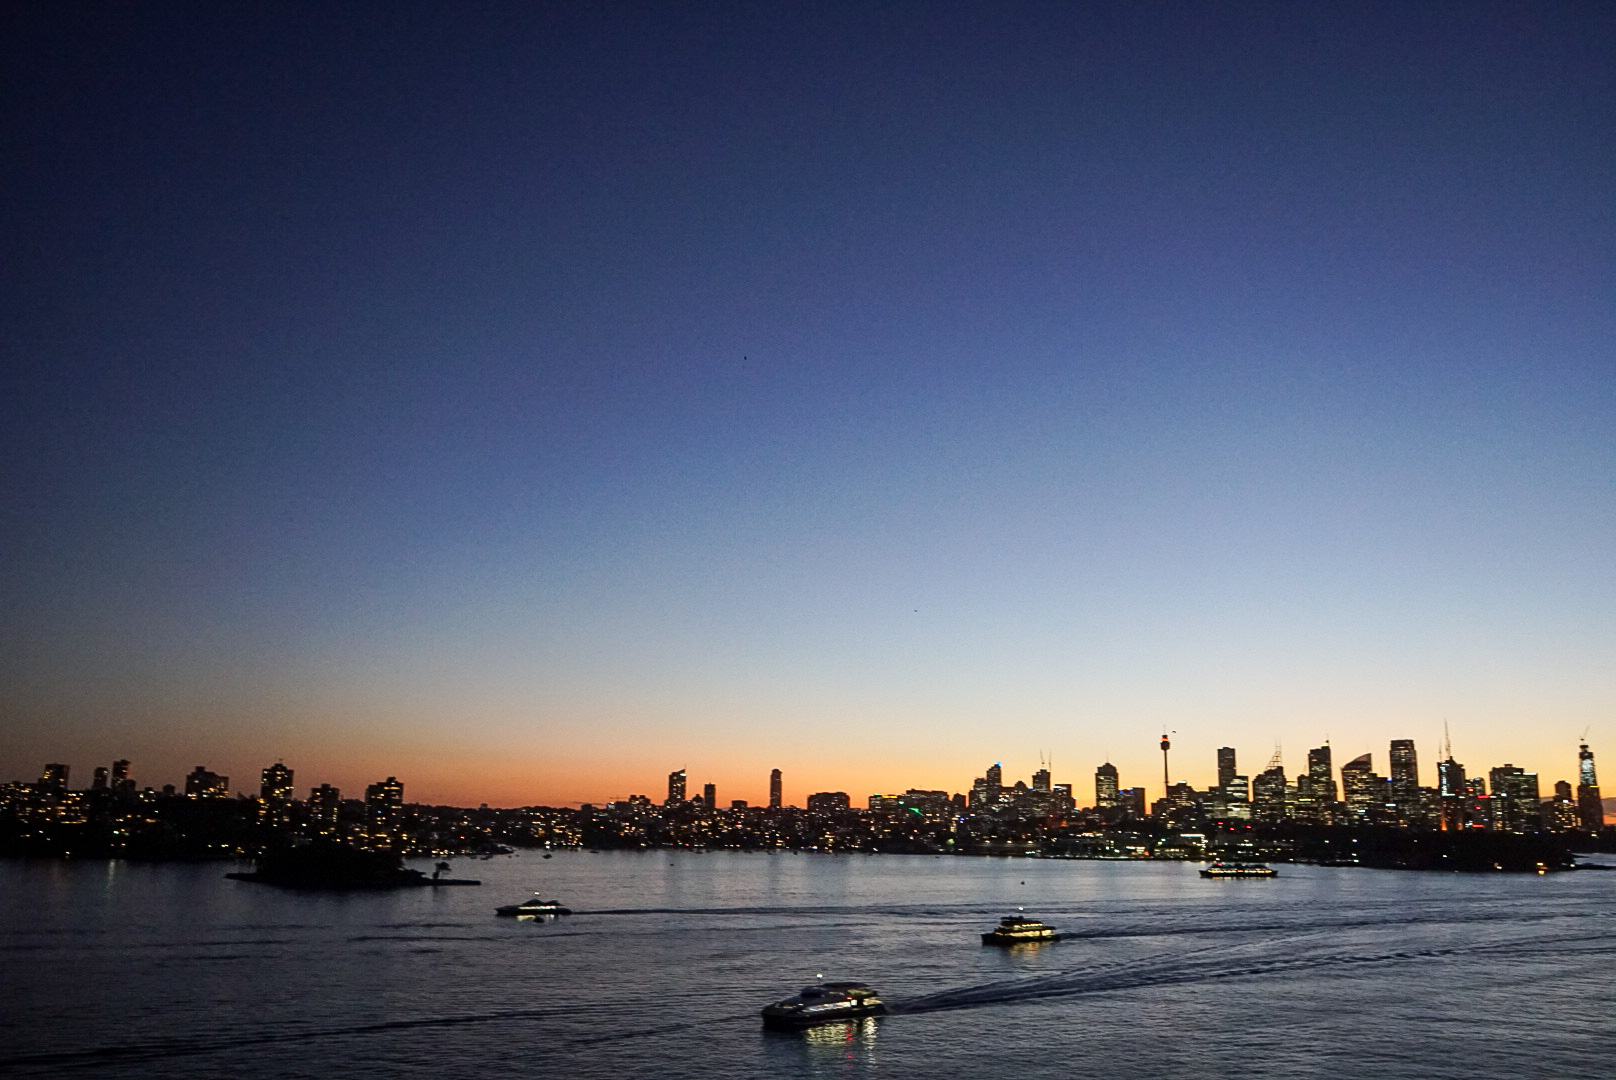 Sydney Skyline at sunset from Carnival Splendor